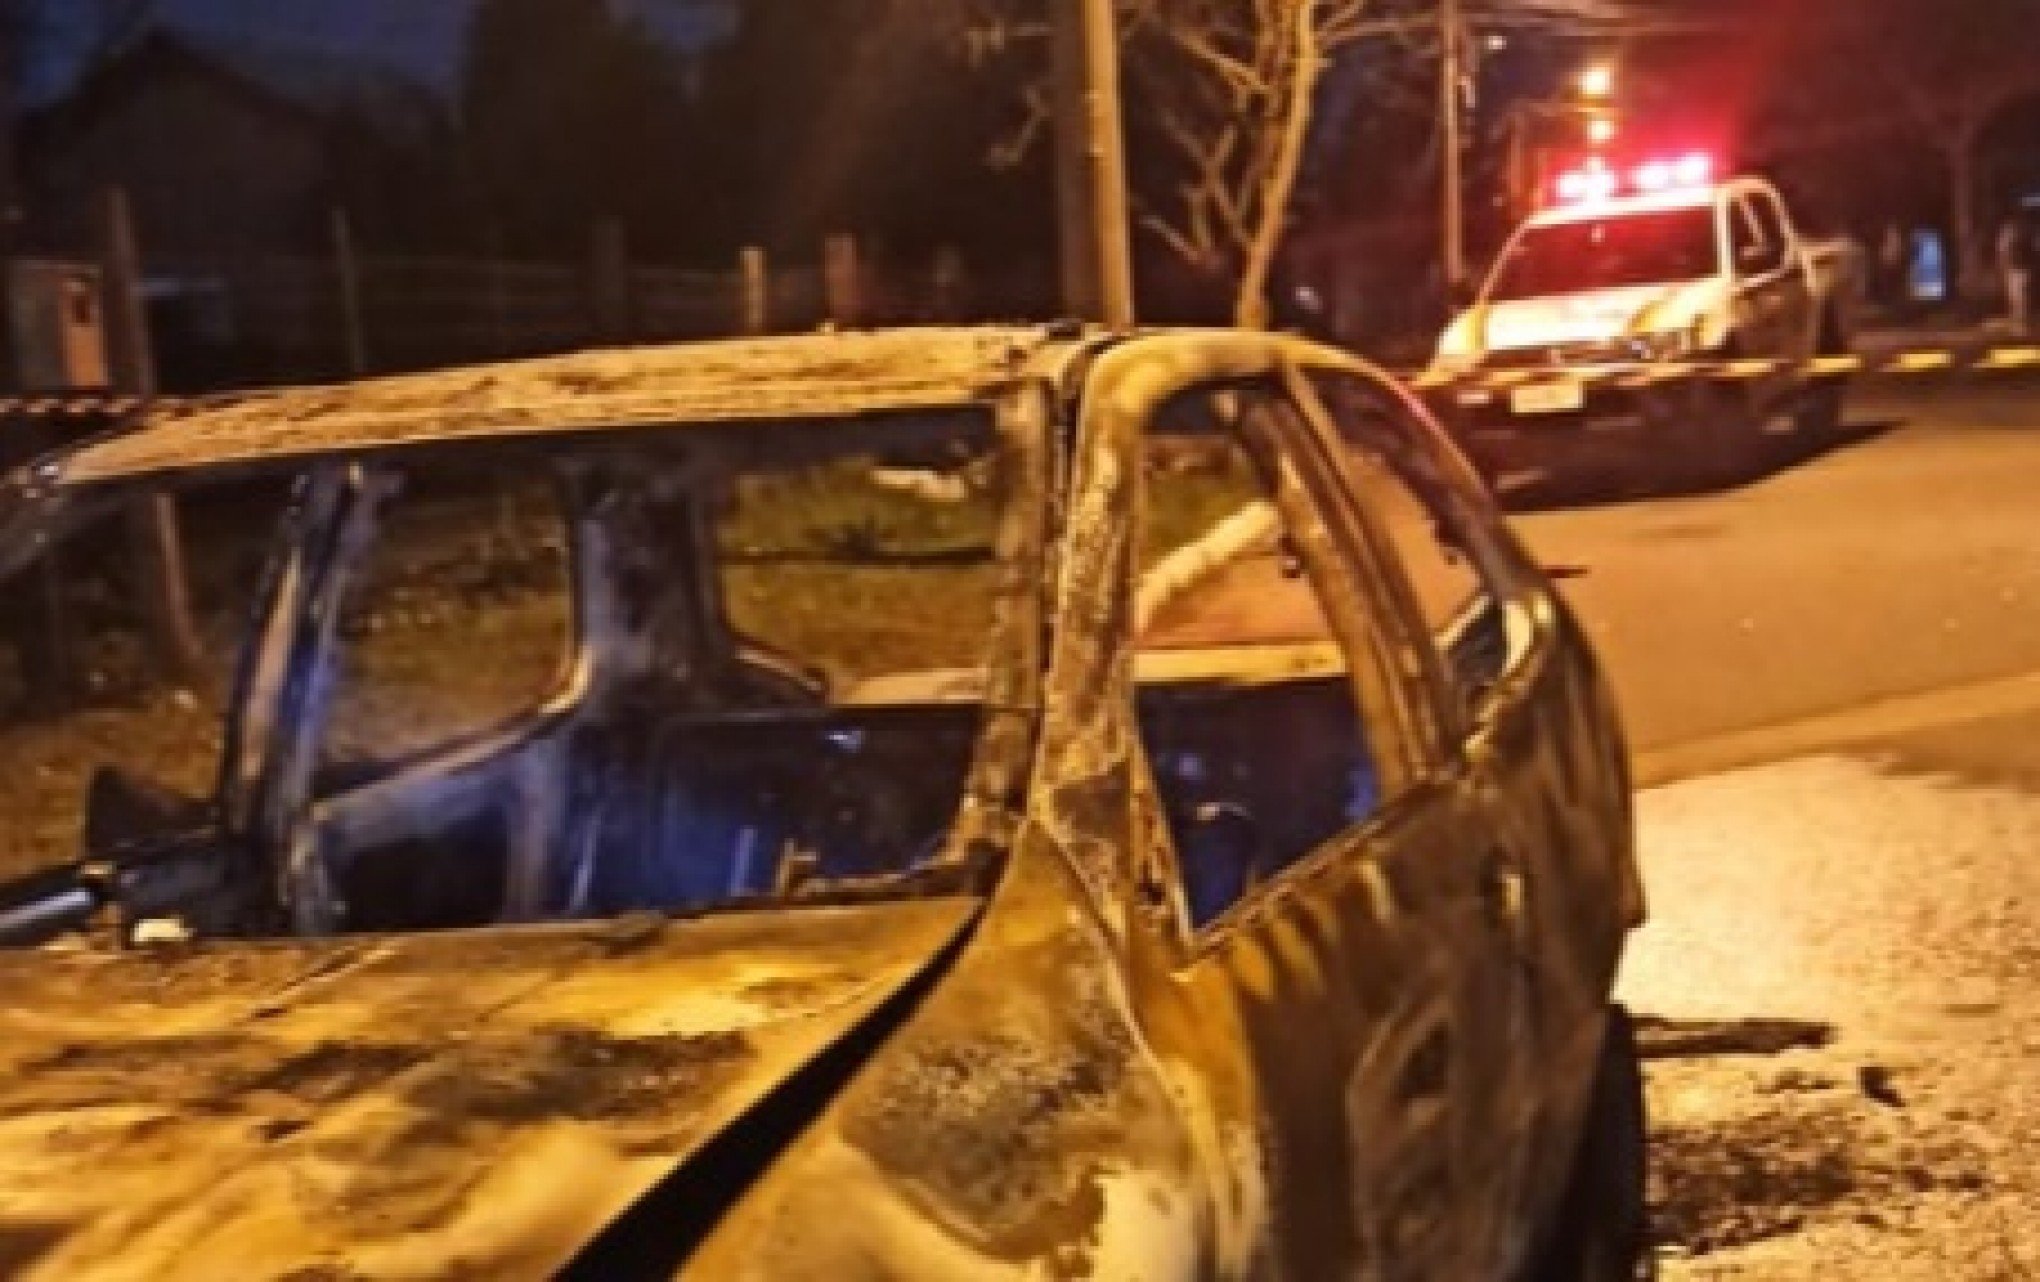 ONDA DE VIOLÊNCIA: Corpo carbonizado em carro incendiado é abandonado em via pública